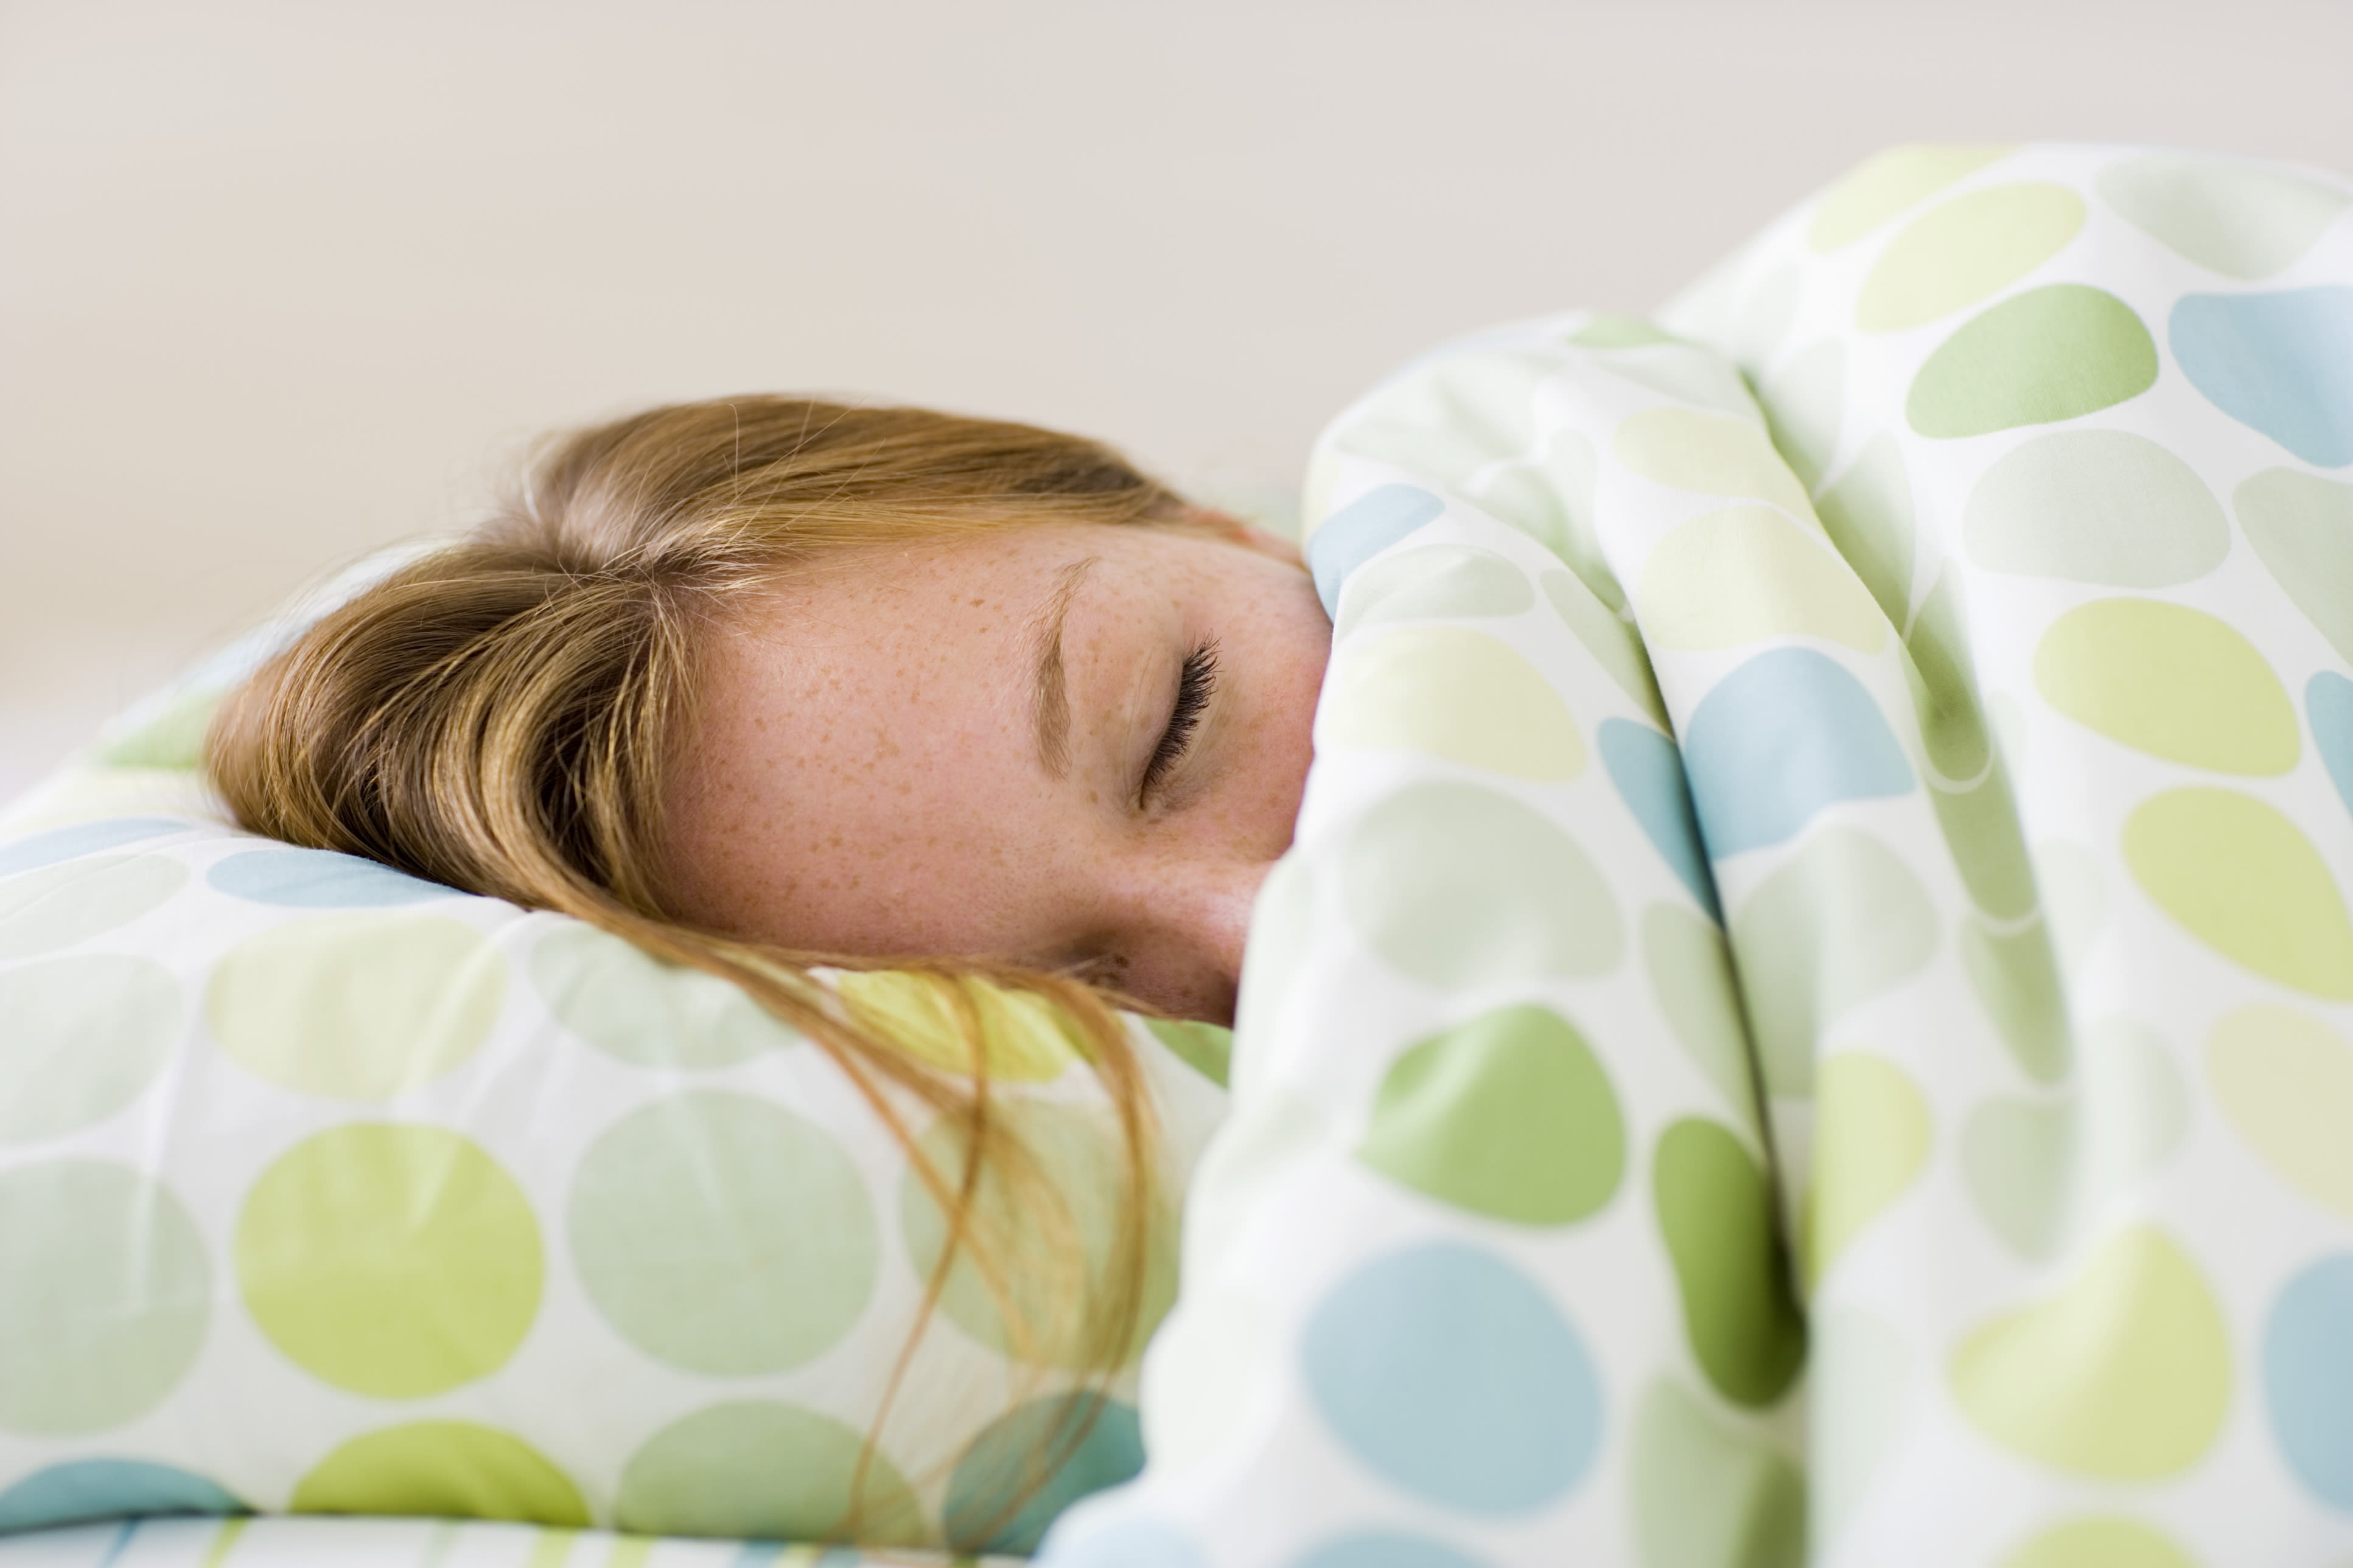 Sleepinggirlsex - The reason your teen sleeps till noon (2014) | CNN